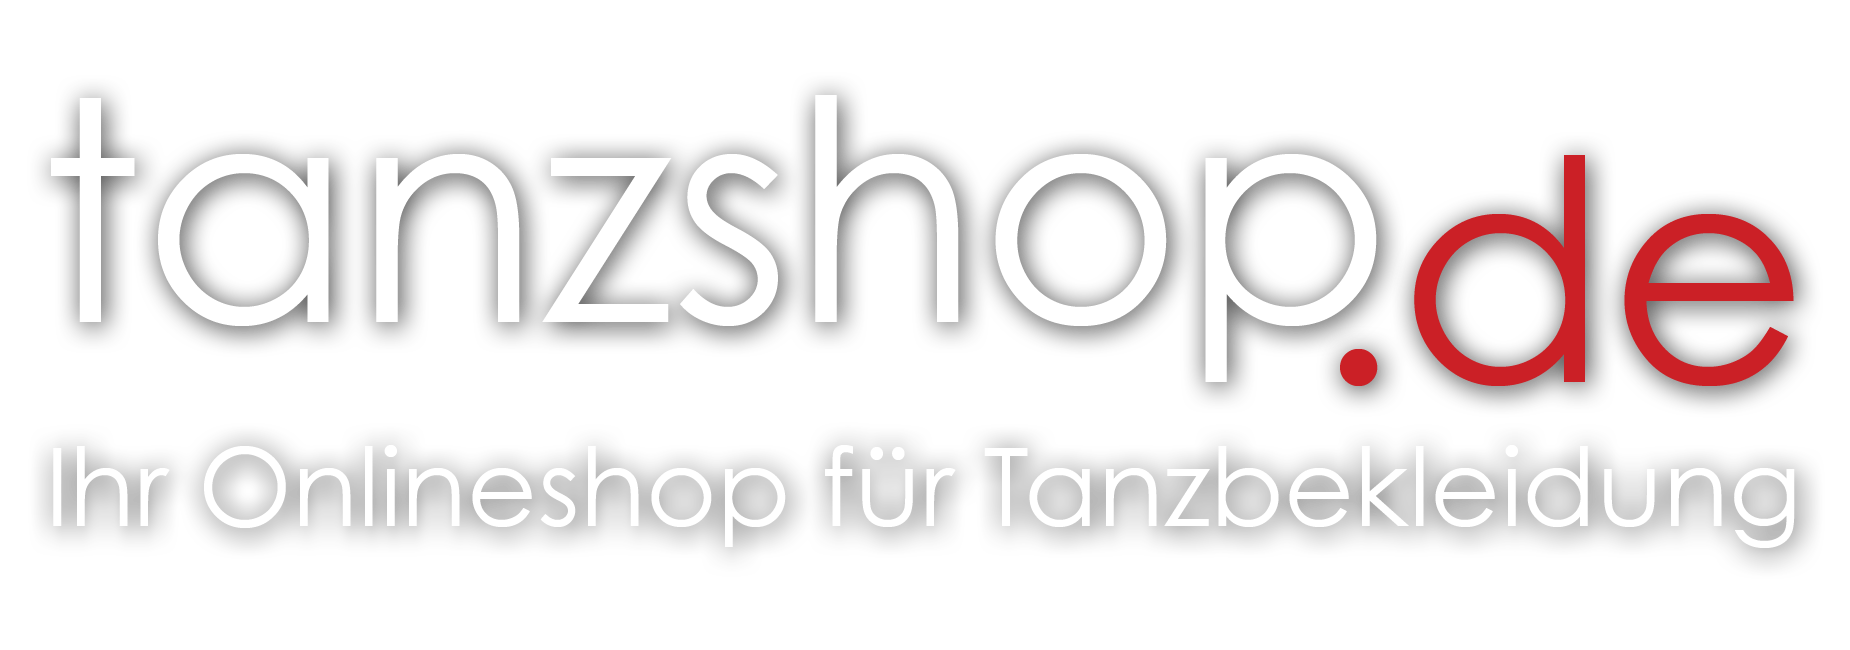 tanzshop.de - Ihr Onlineshop für Tanzbekleidung